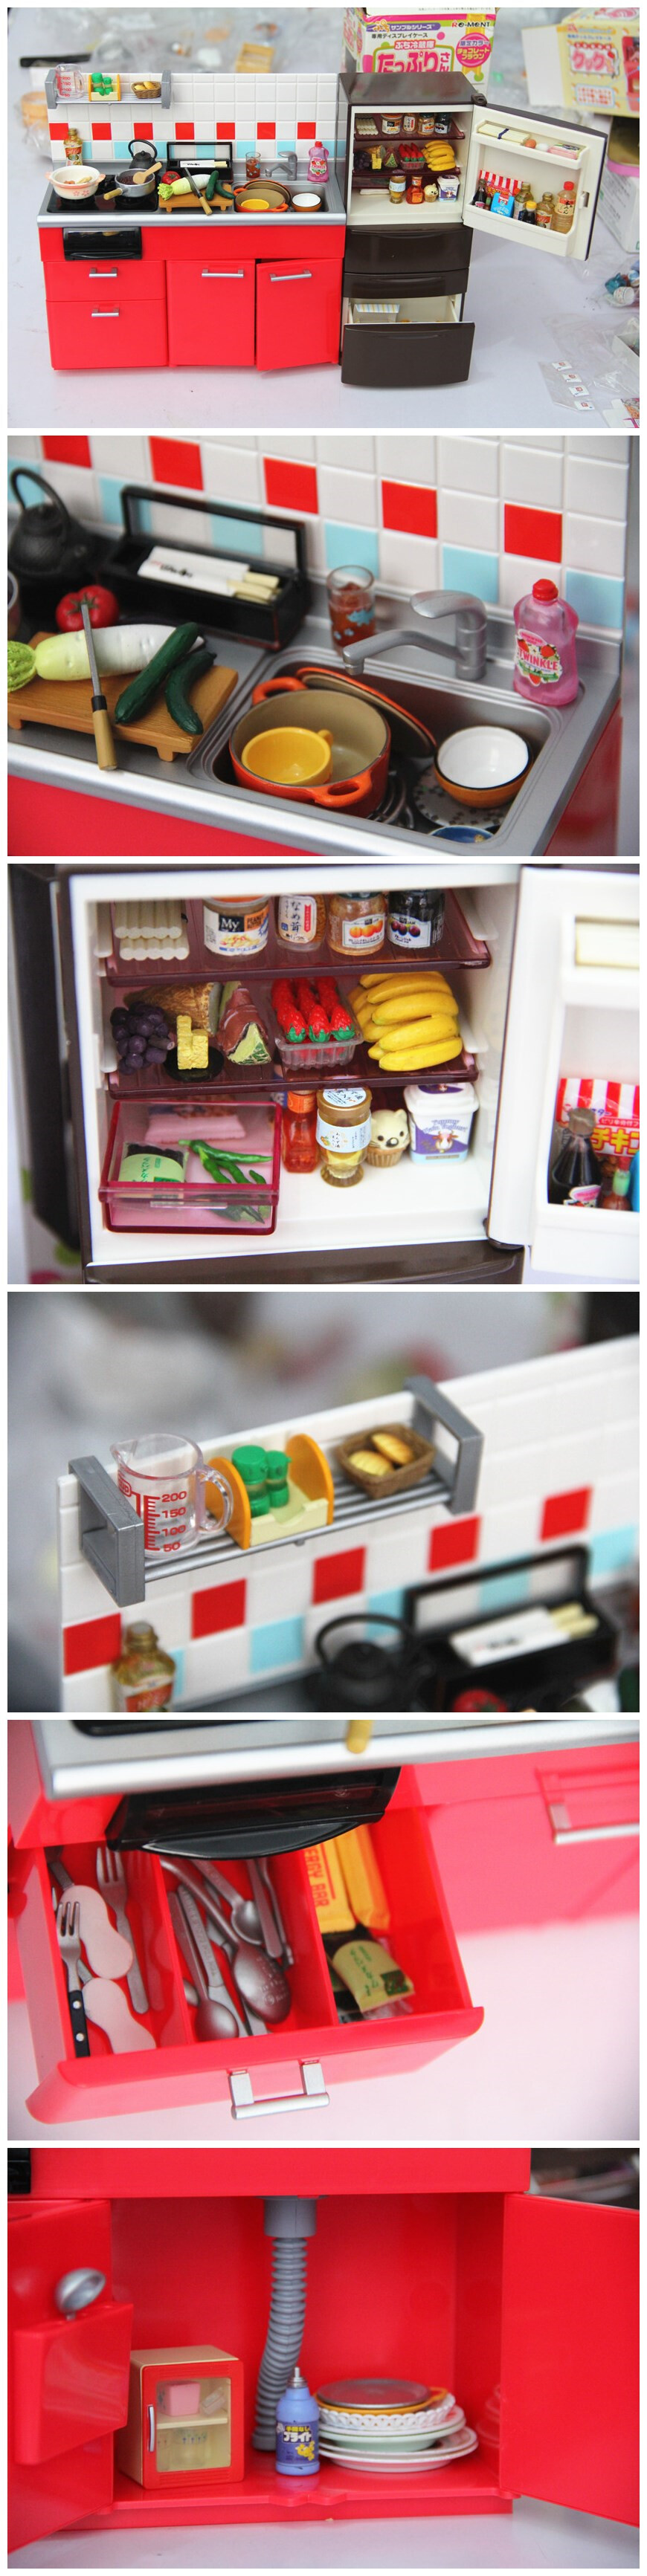 【re-ment】棕色冰箱、红色橱柜。厨房用品哦~看着很好玩于是就收集了下来做成一个套图发给大家看看。希望大家也喜欢食玩。